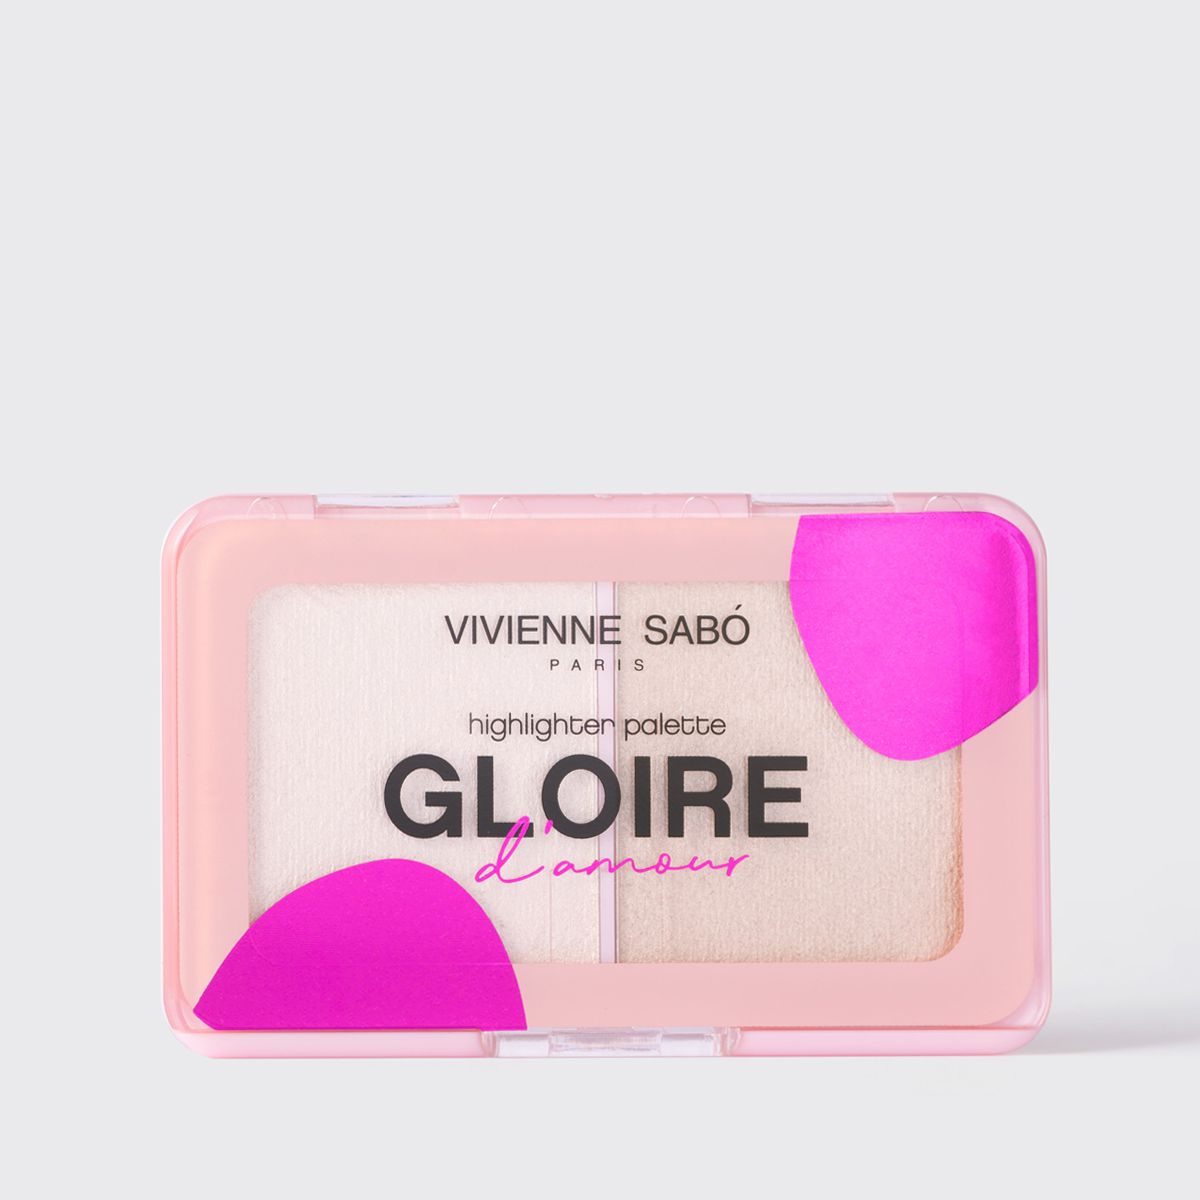 Gloire D'amour от магазина Vivienne Sabo